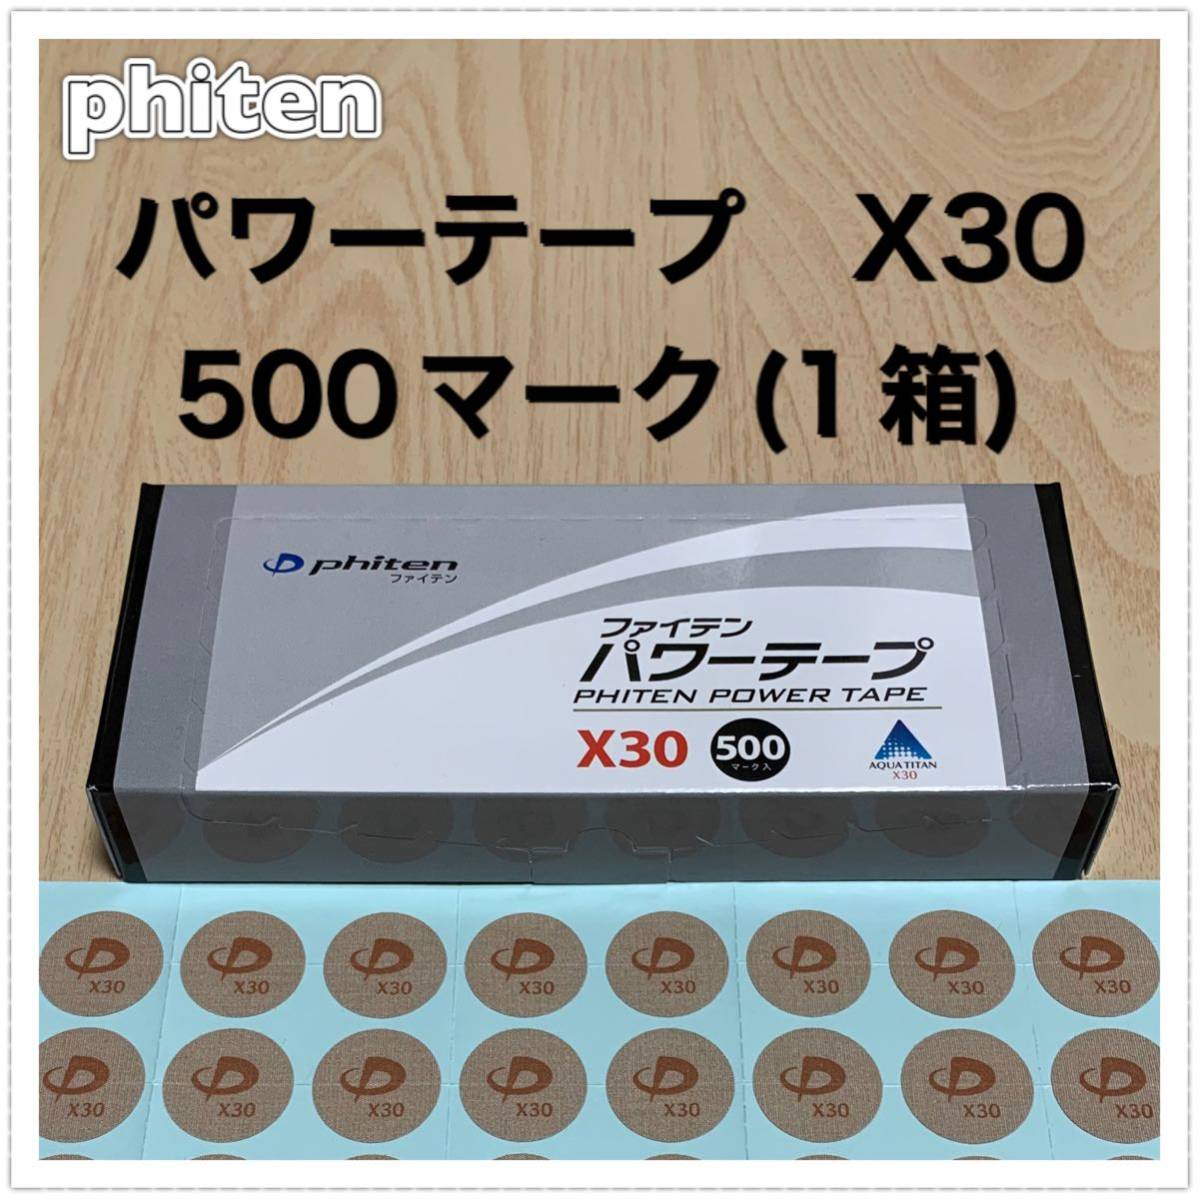 セール商品 ファイテン phiten パワーテープX30 500マーク riosmauricio.com